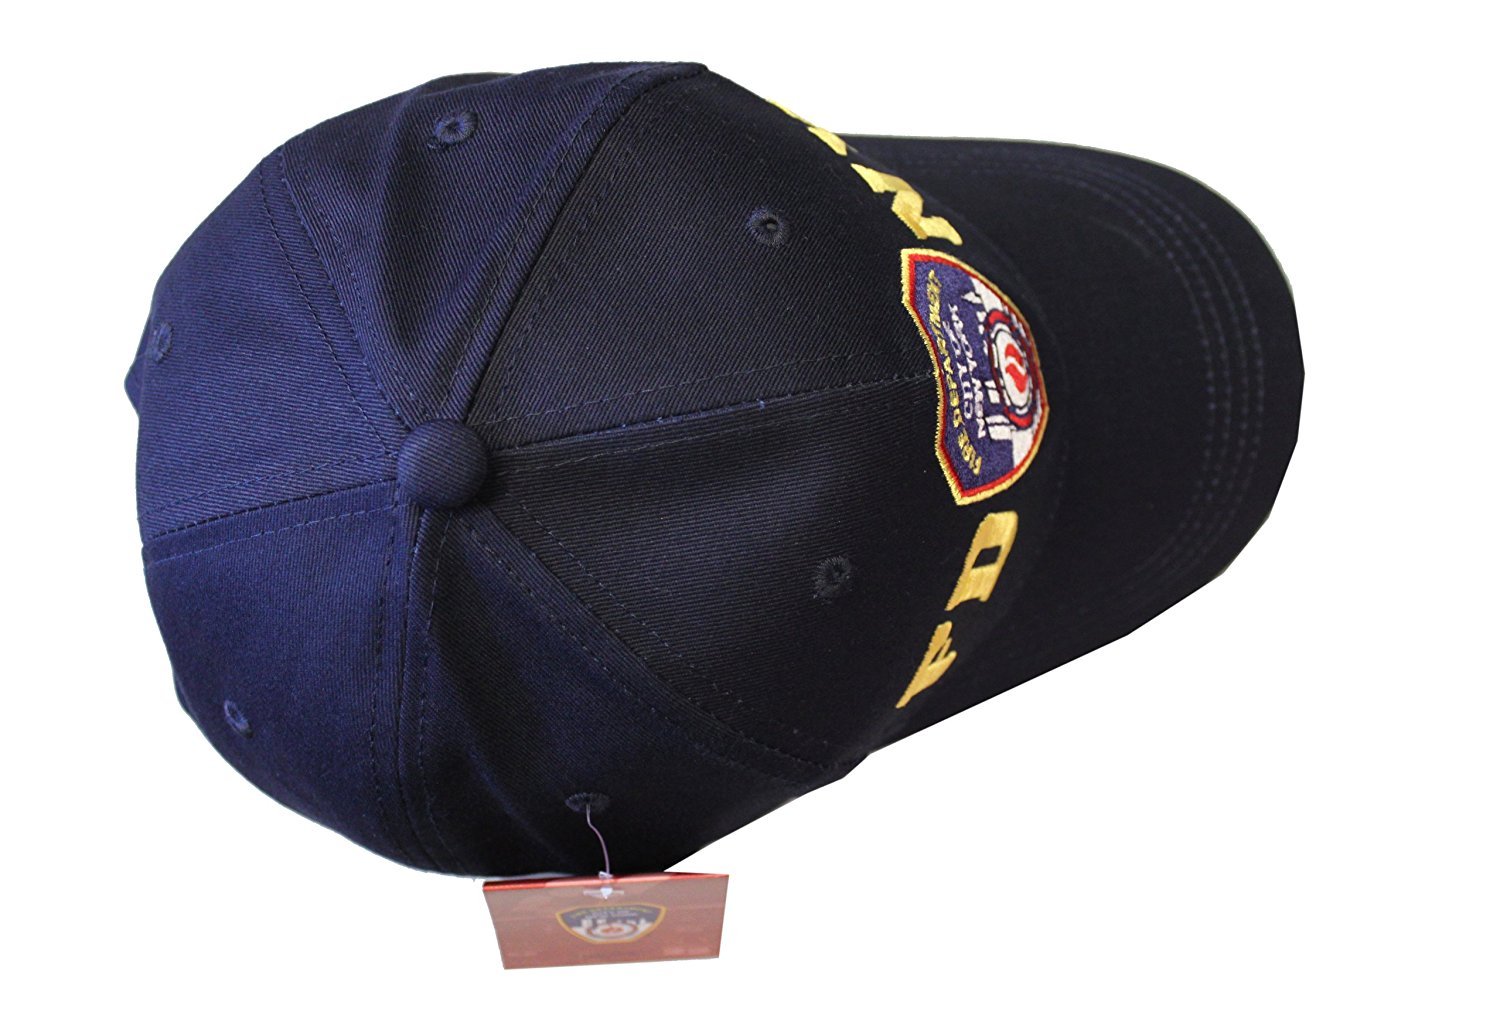 FDNY Baseball Hat Men's (Navy & Gold)